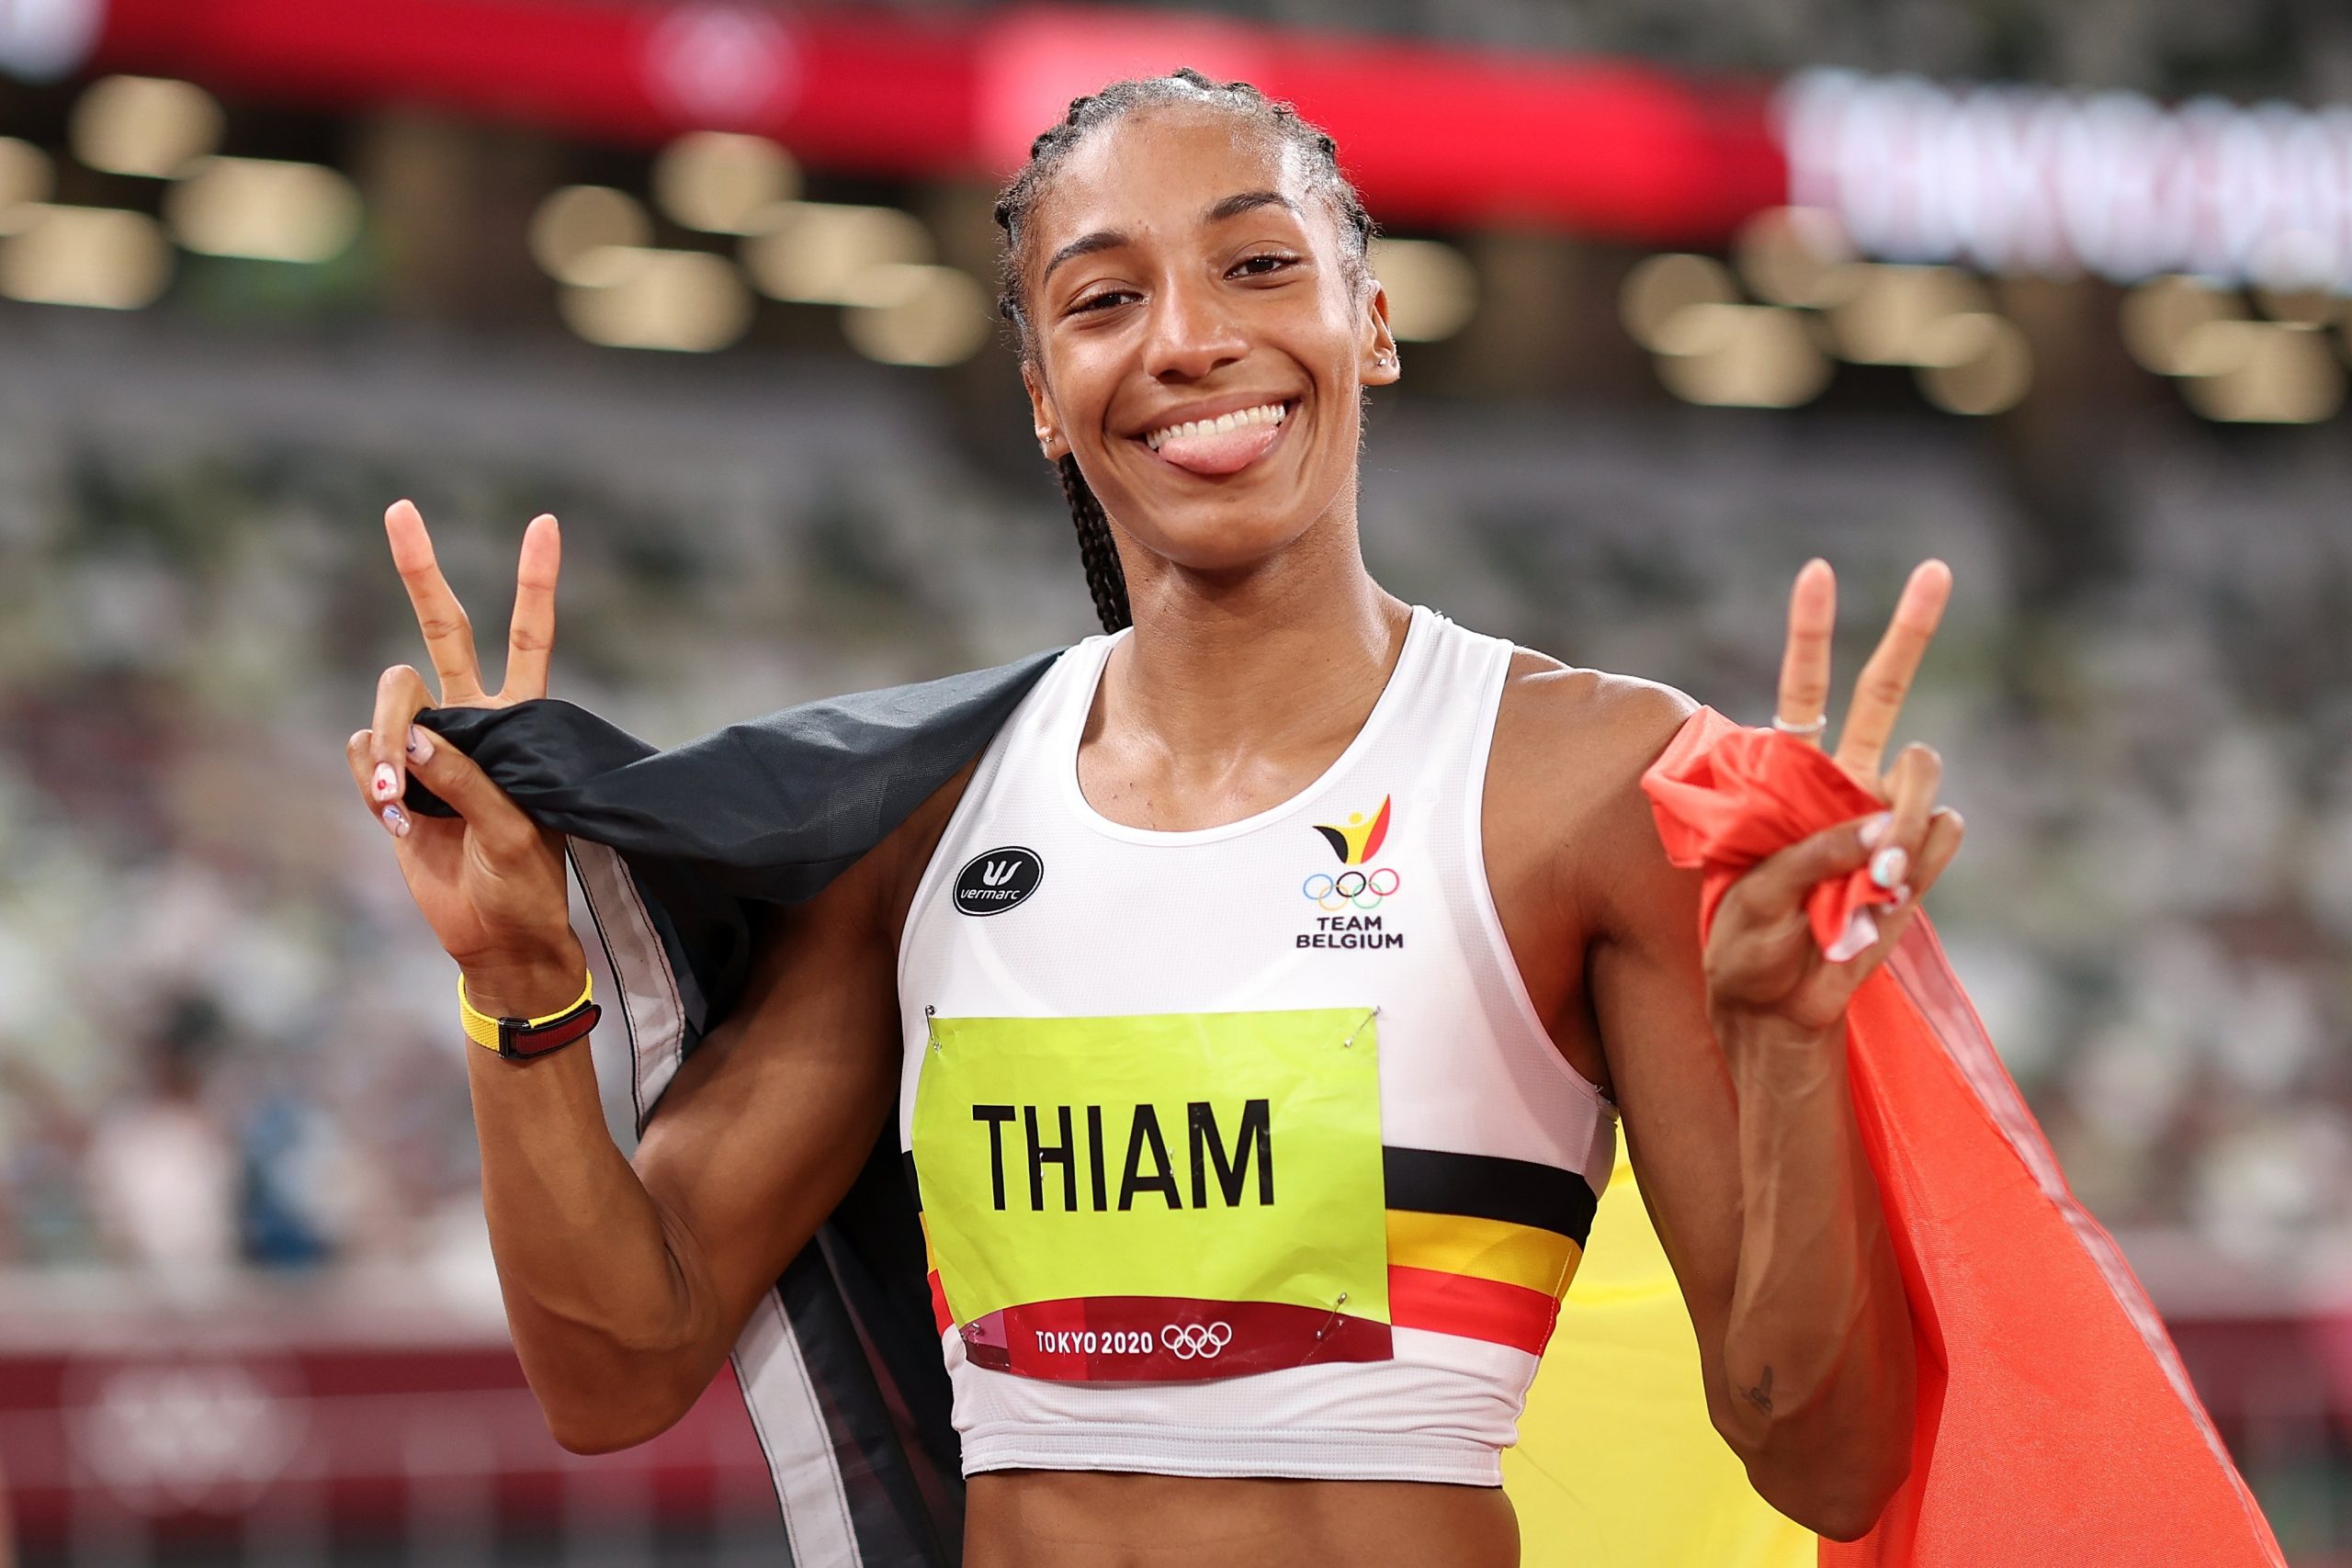 La star d'athlétisme belge est sacrée championne d’Europe - Source : The Olympic Games.